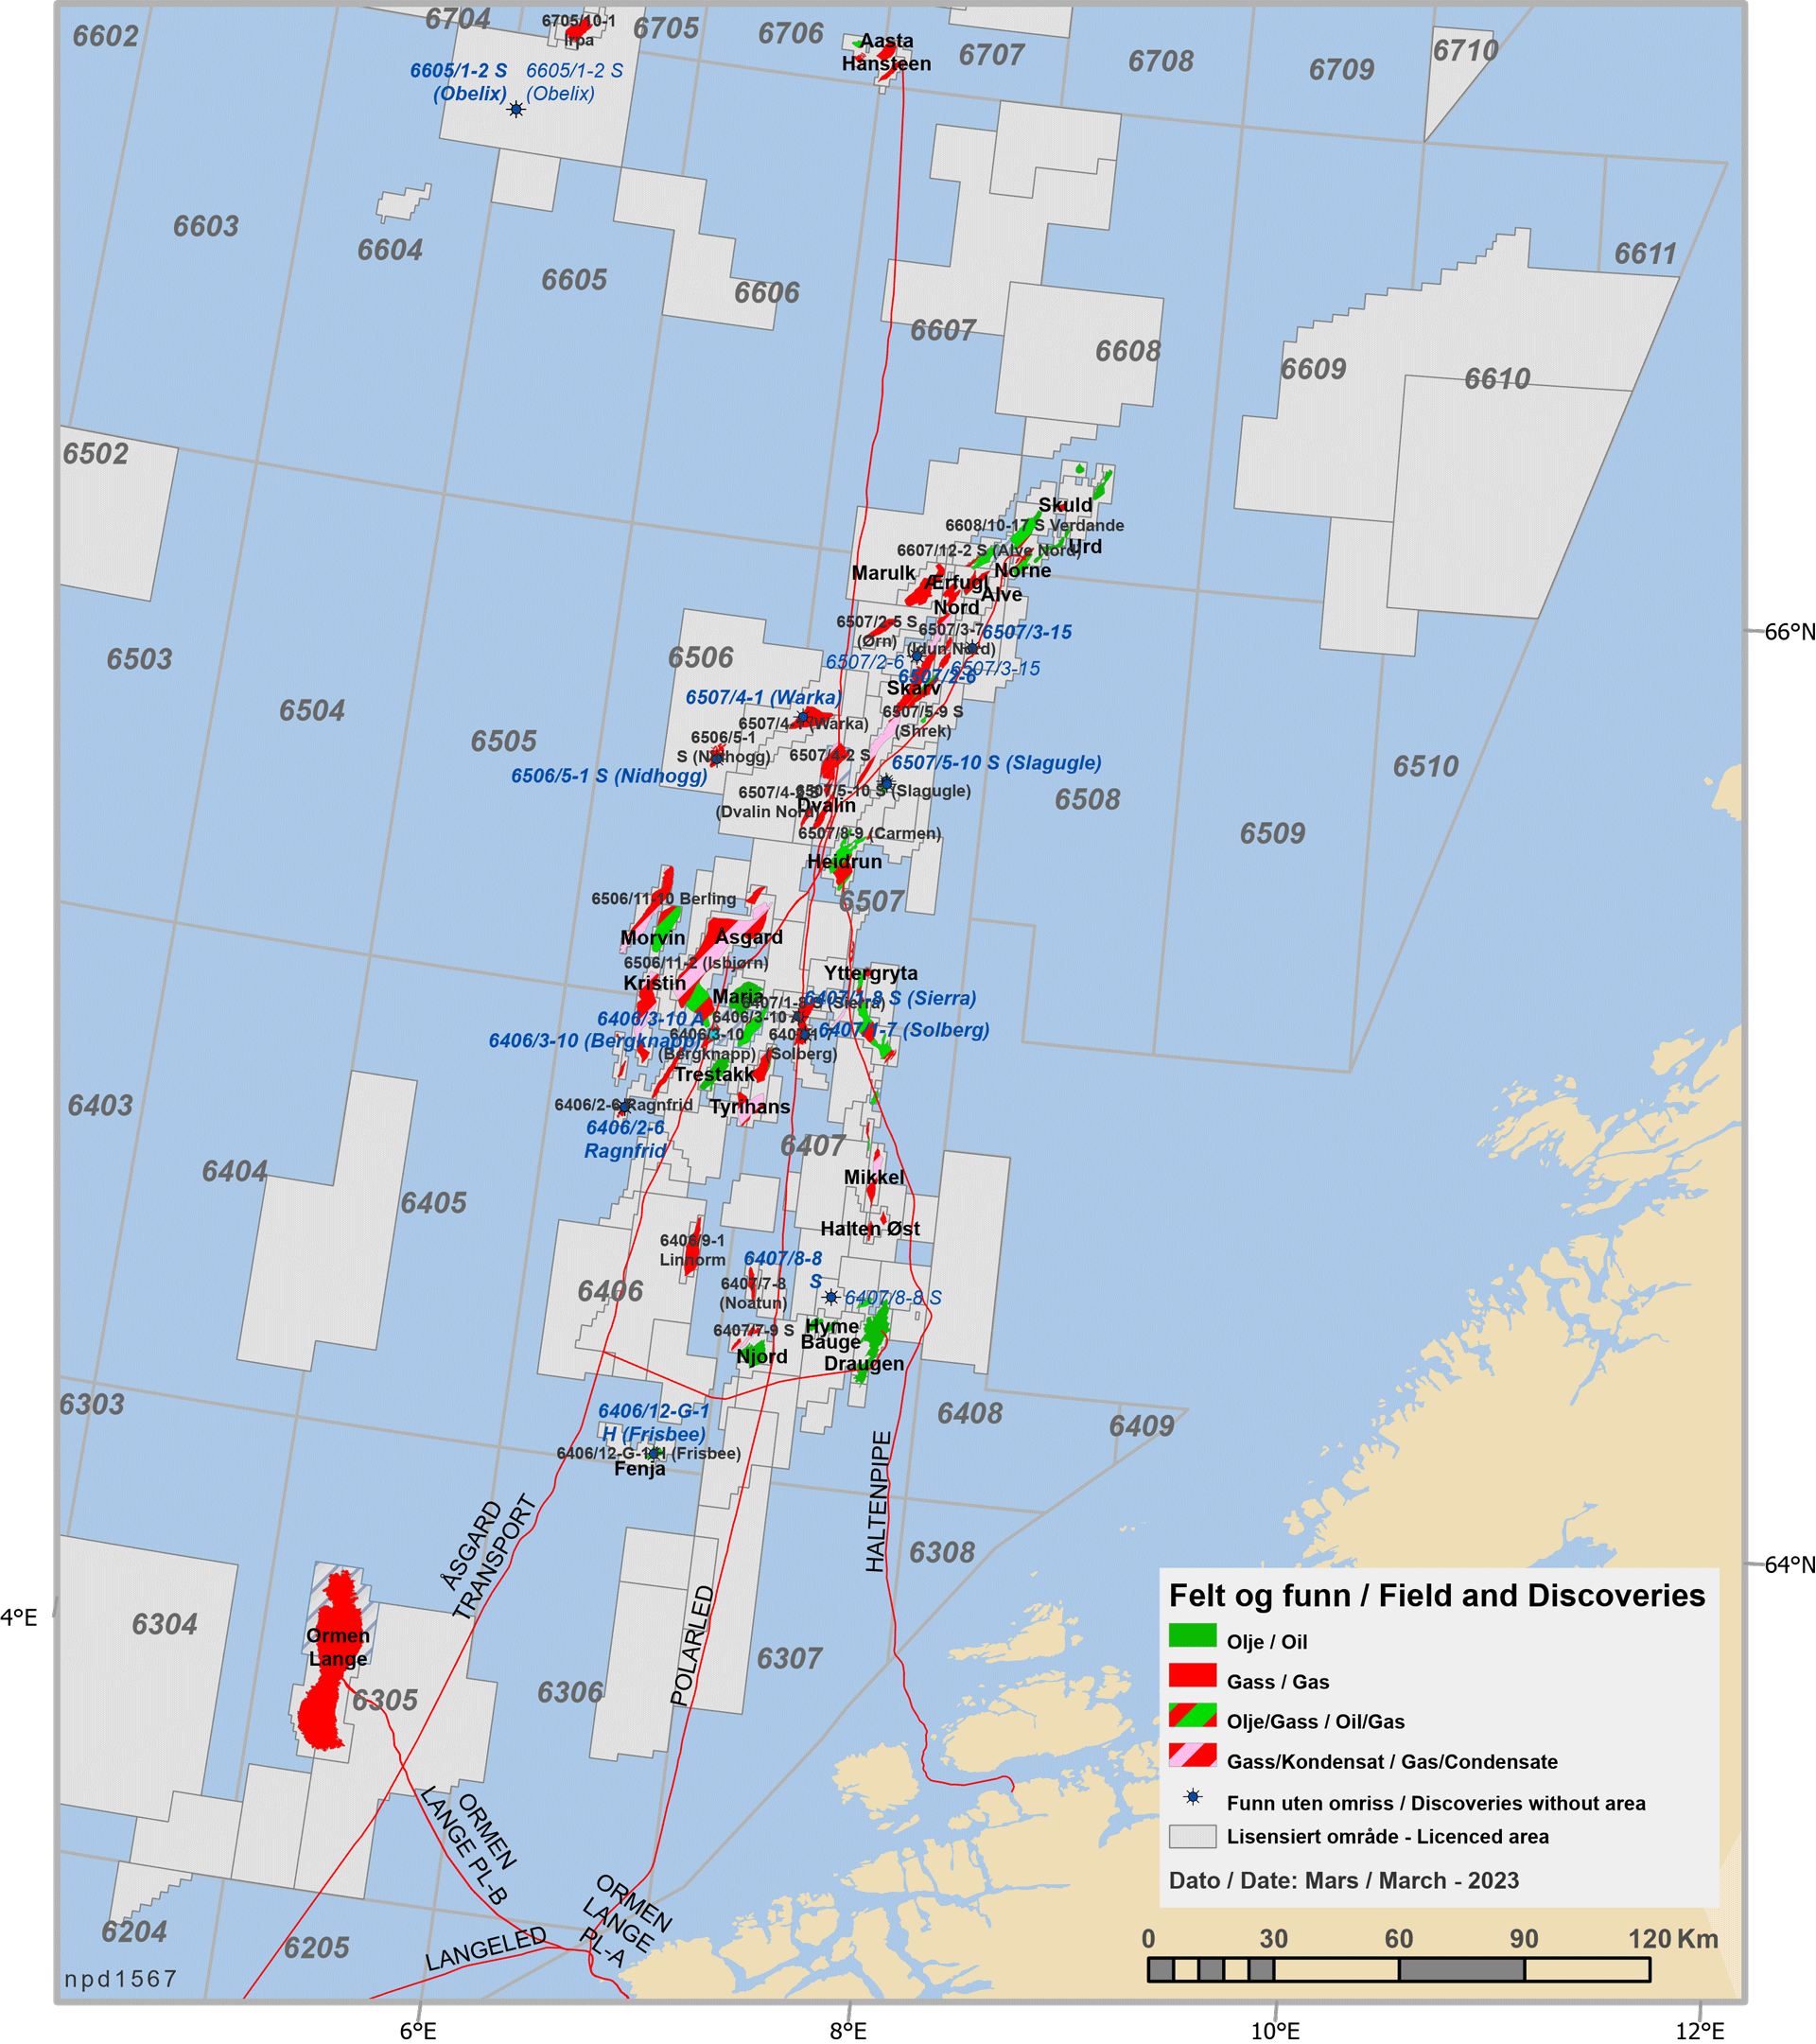 Felt og funn i Norskehavet